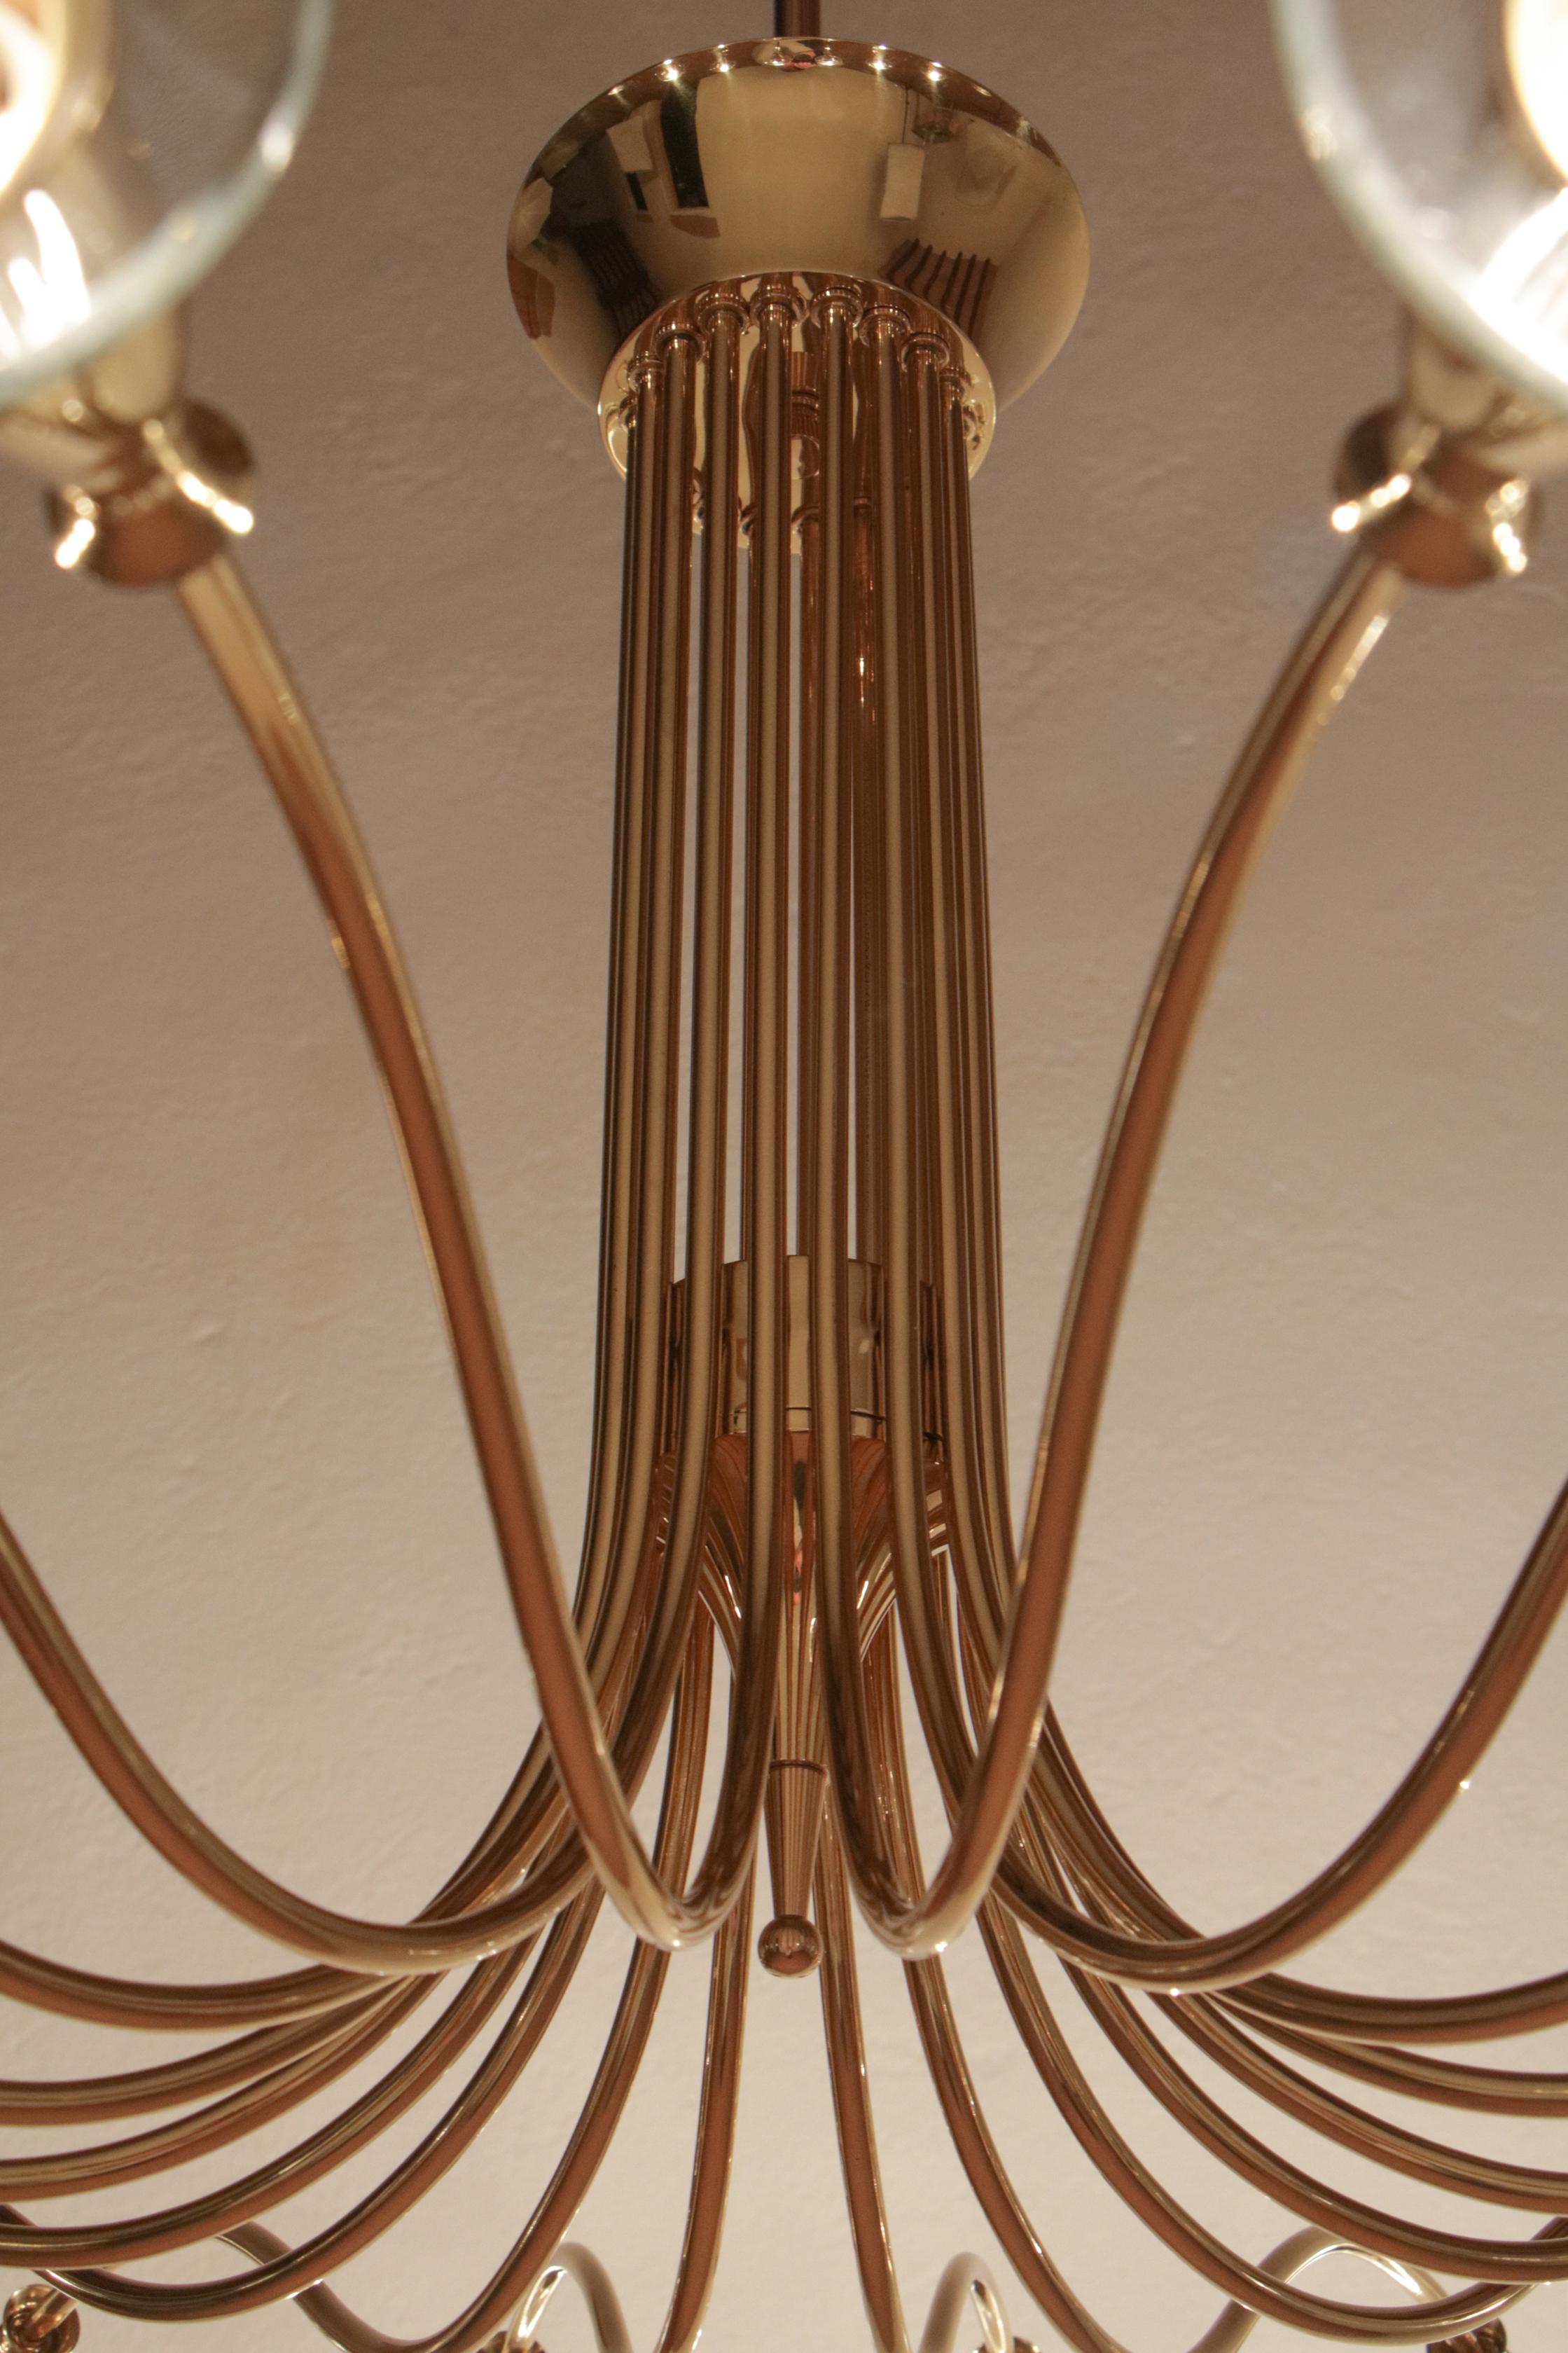 Magnifico lampadario disegnato da Angelo Lelli per Arteluce nel 1950. Realizzato in ottone lucido con vetri molati, questo lampadario presenta diciotto luci di formato E14. Il design di grande impatto scenico si unisce a una qualità esecutiva